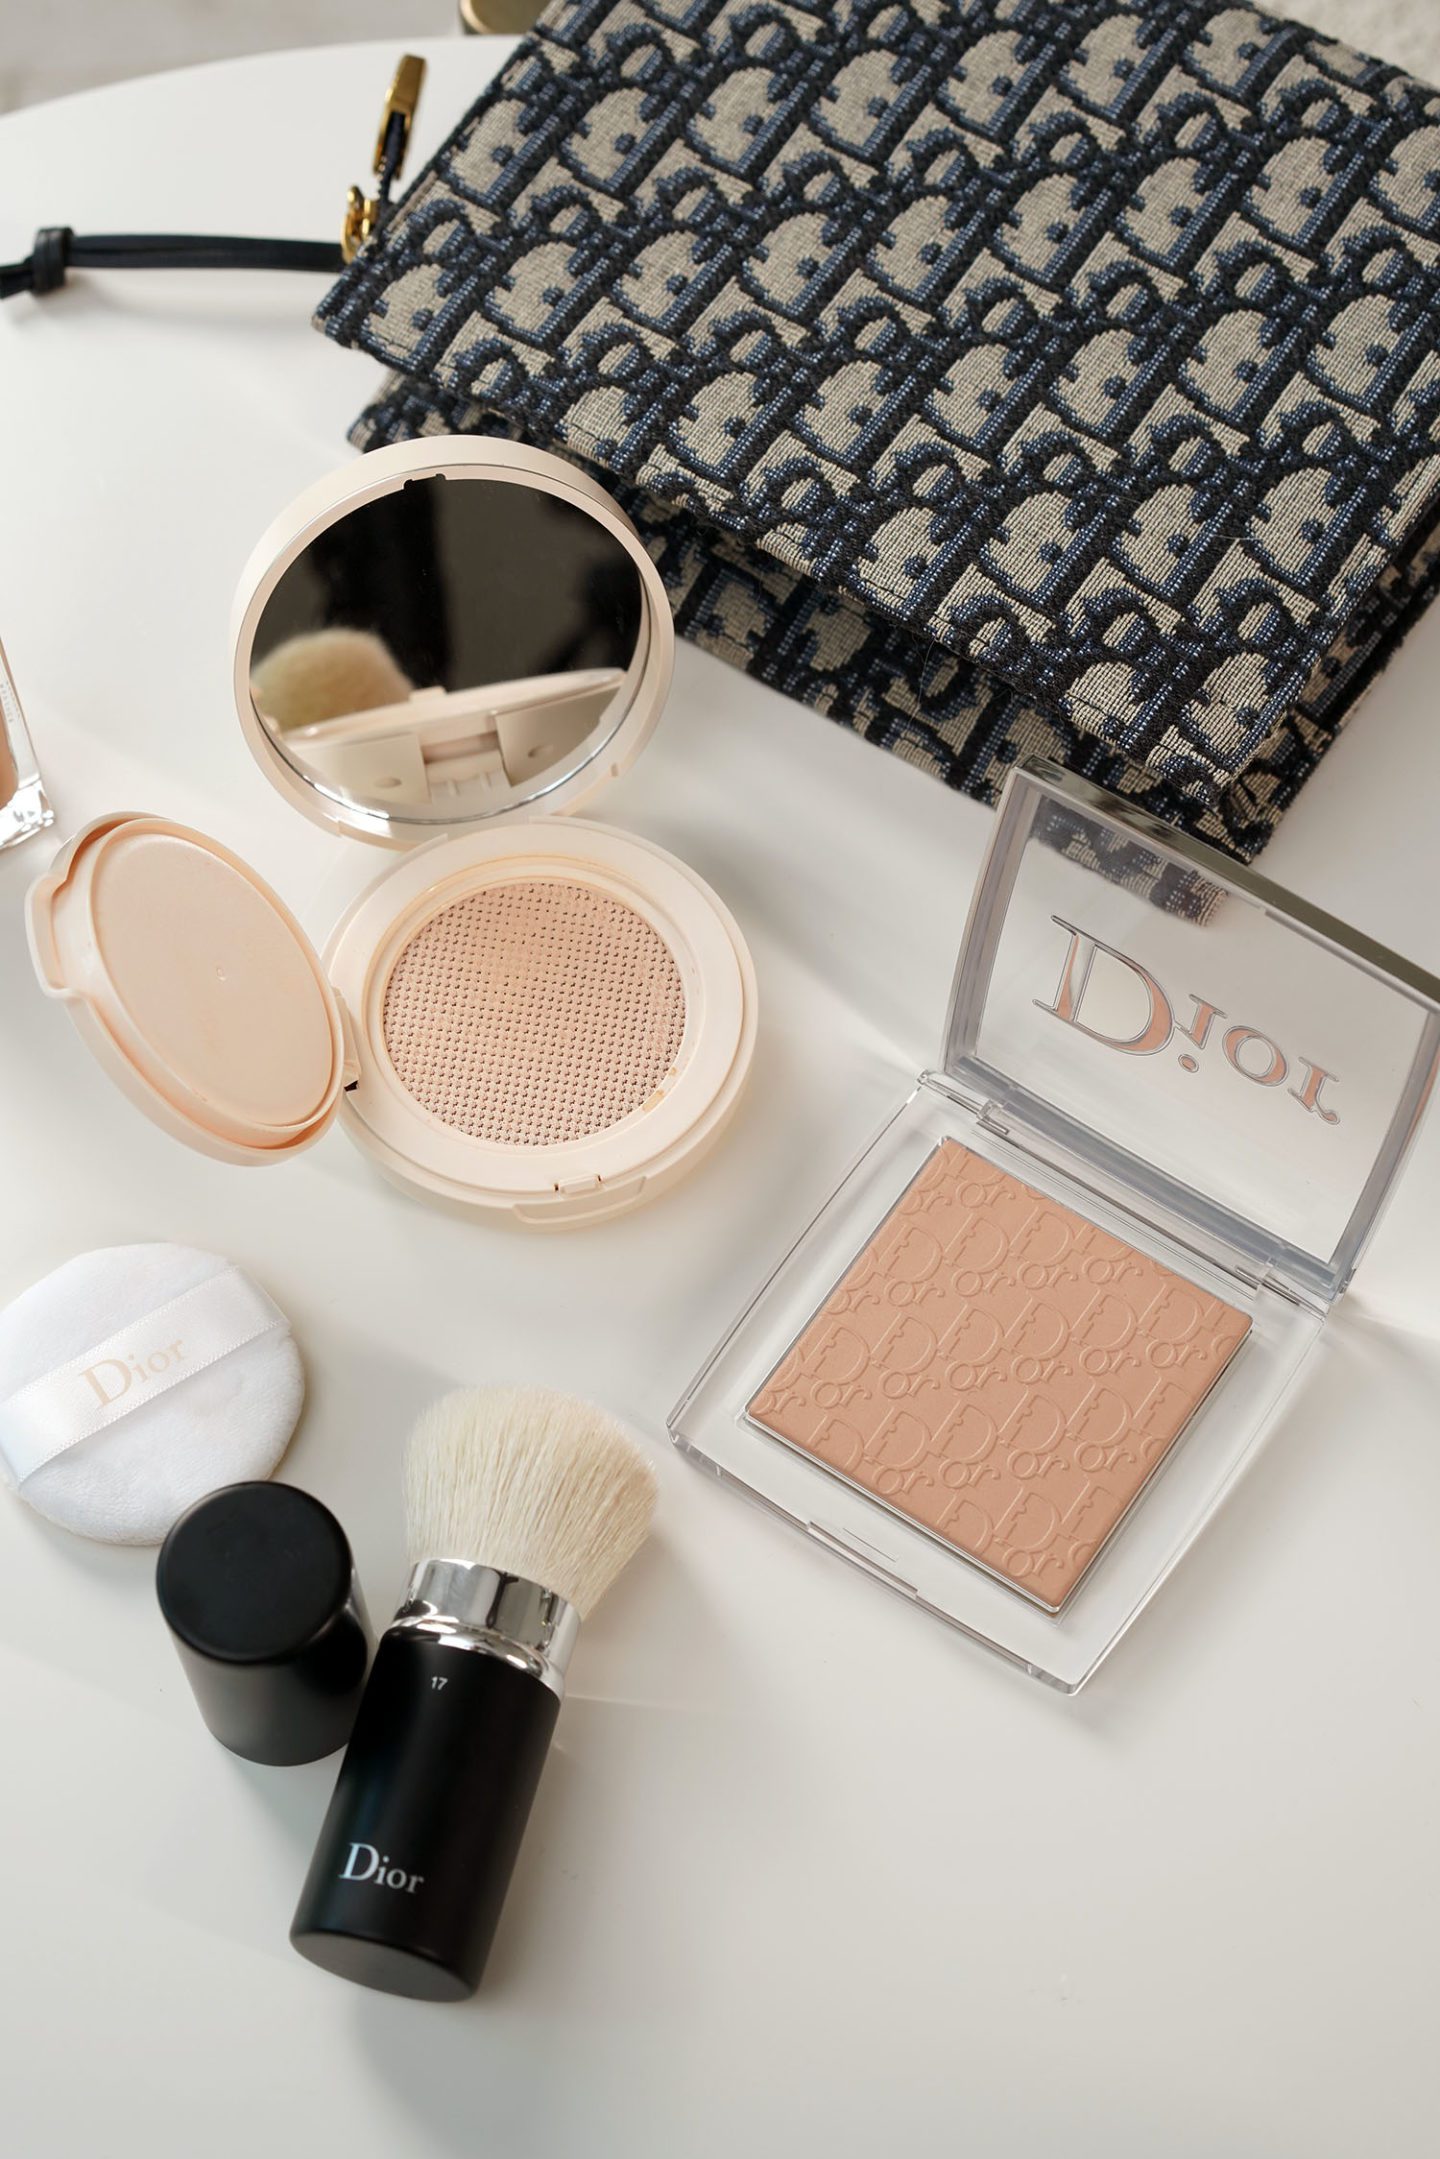 Dior BACKSTAGE Face & Body Powder-No-Powder and Cushion Powder